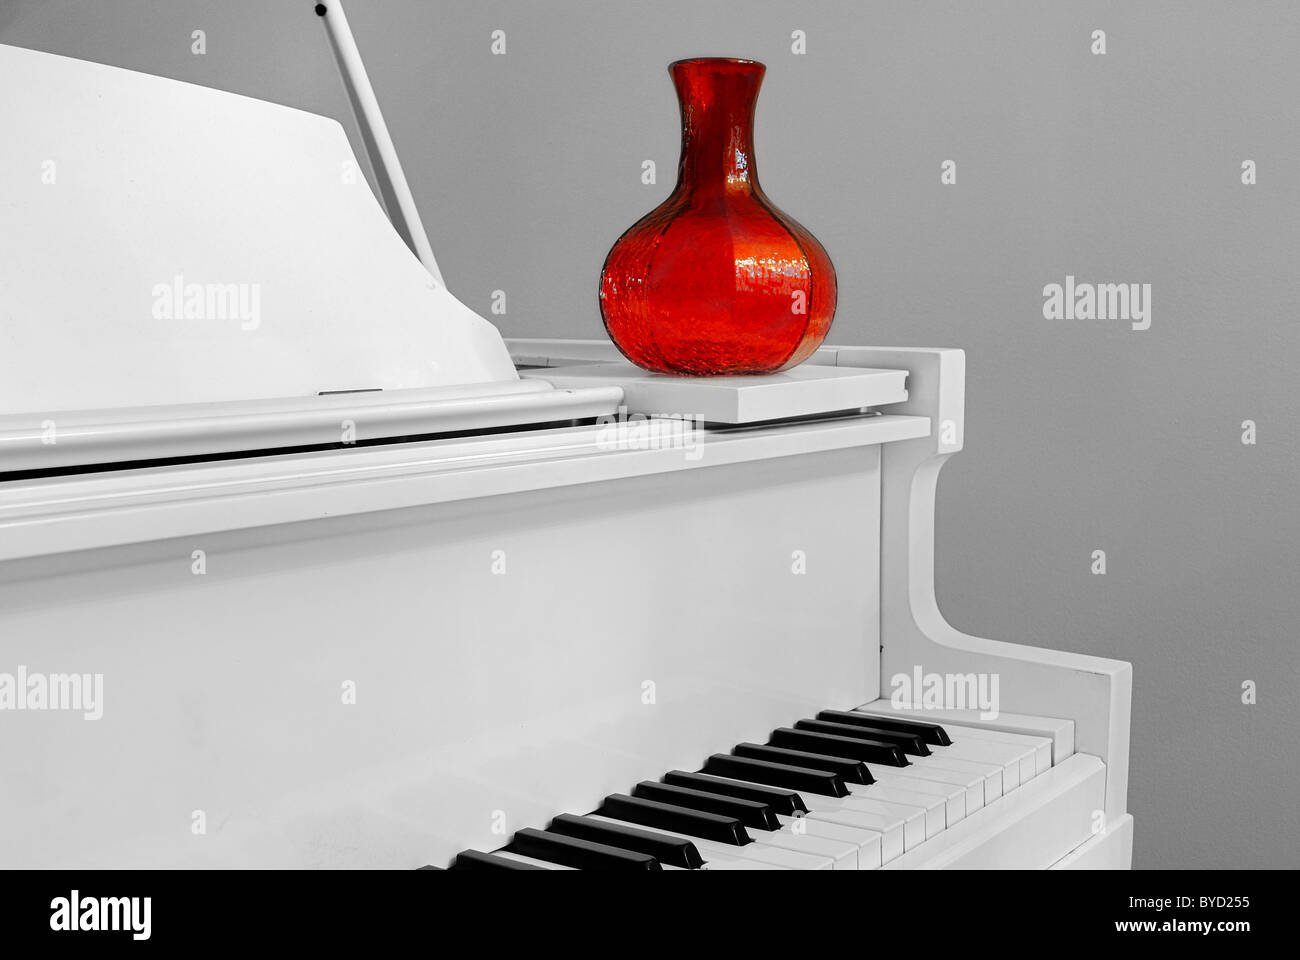 Esquina de un piano con un jarrón de color rojo en el interior de una casa. Foto de stock